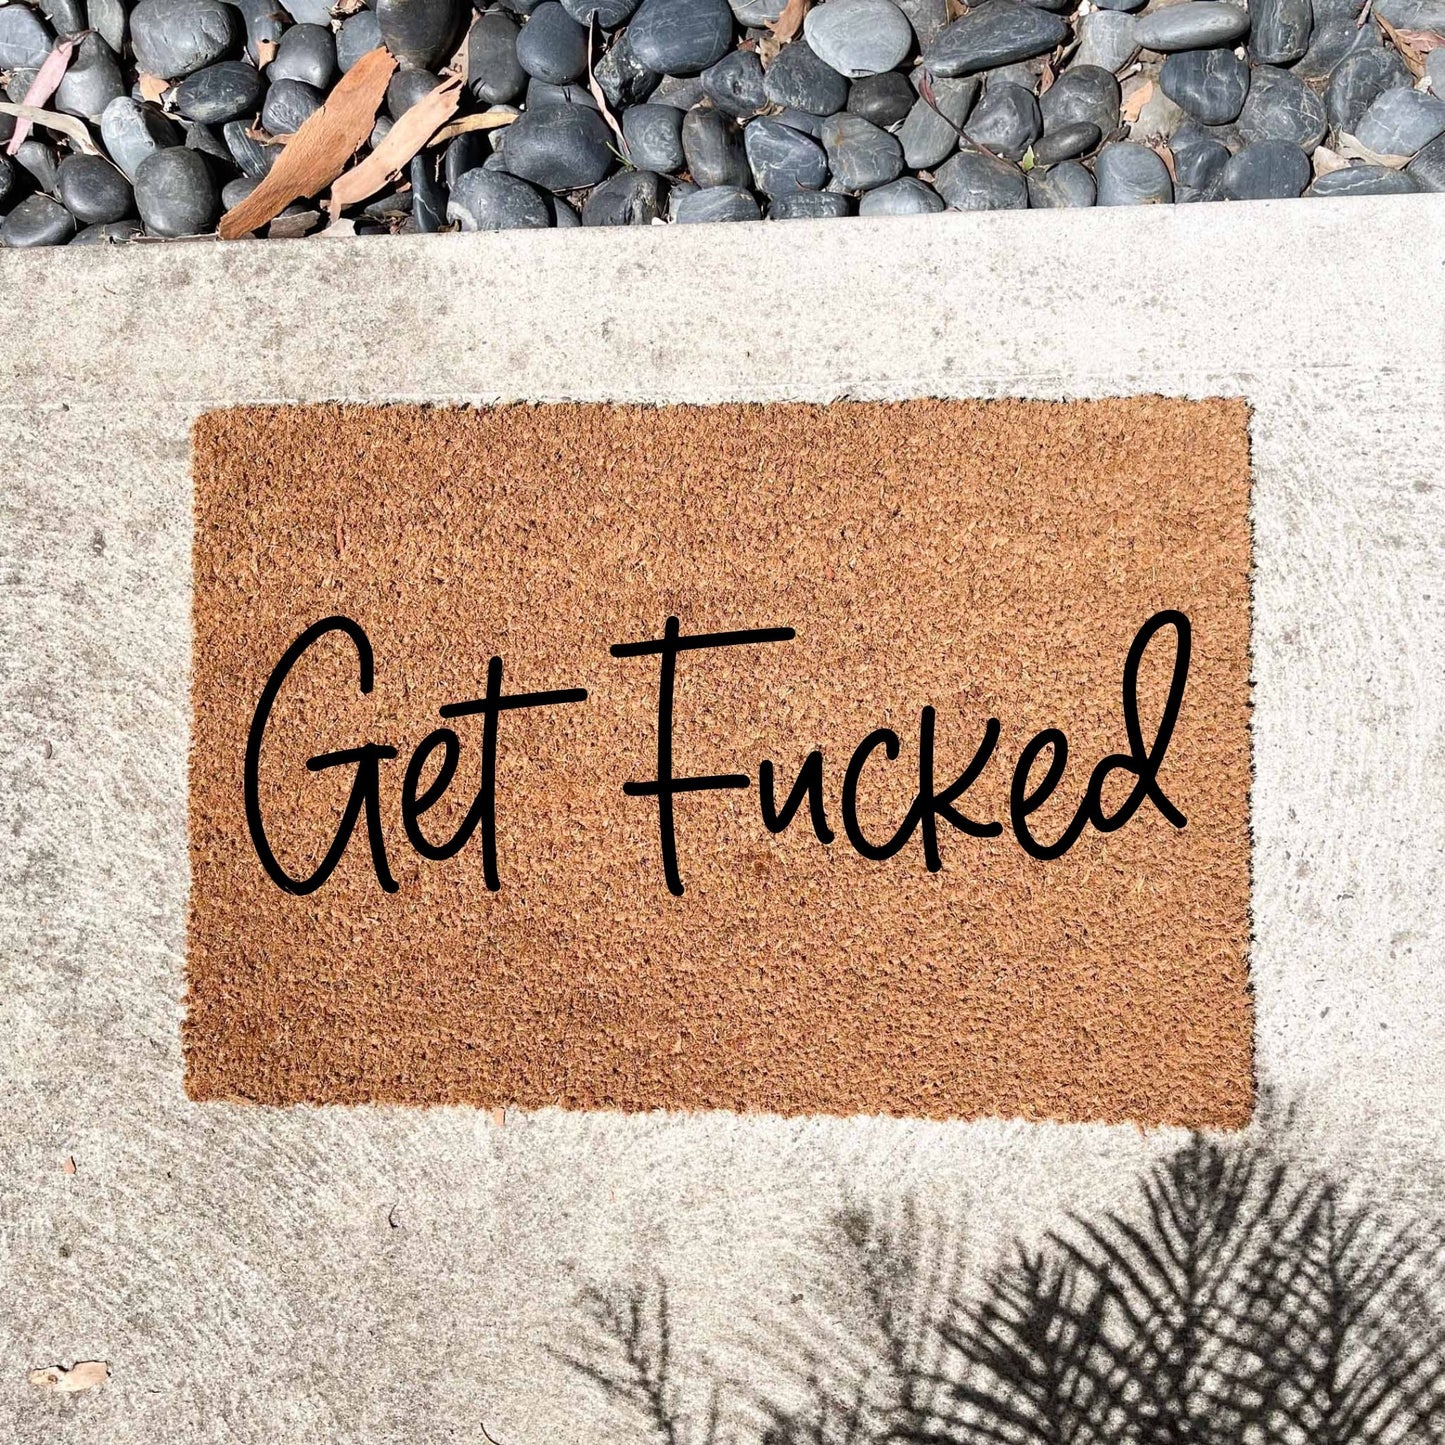 Get Fucked doormat, unique doormat, custom doormat, personalised doormat